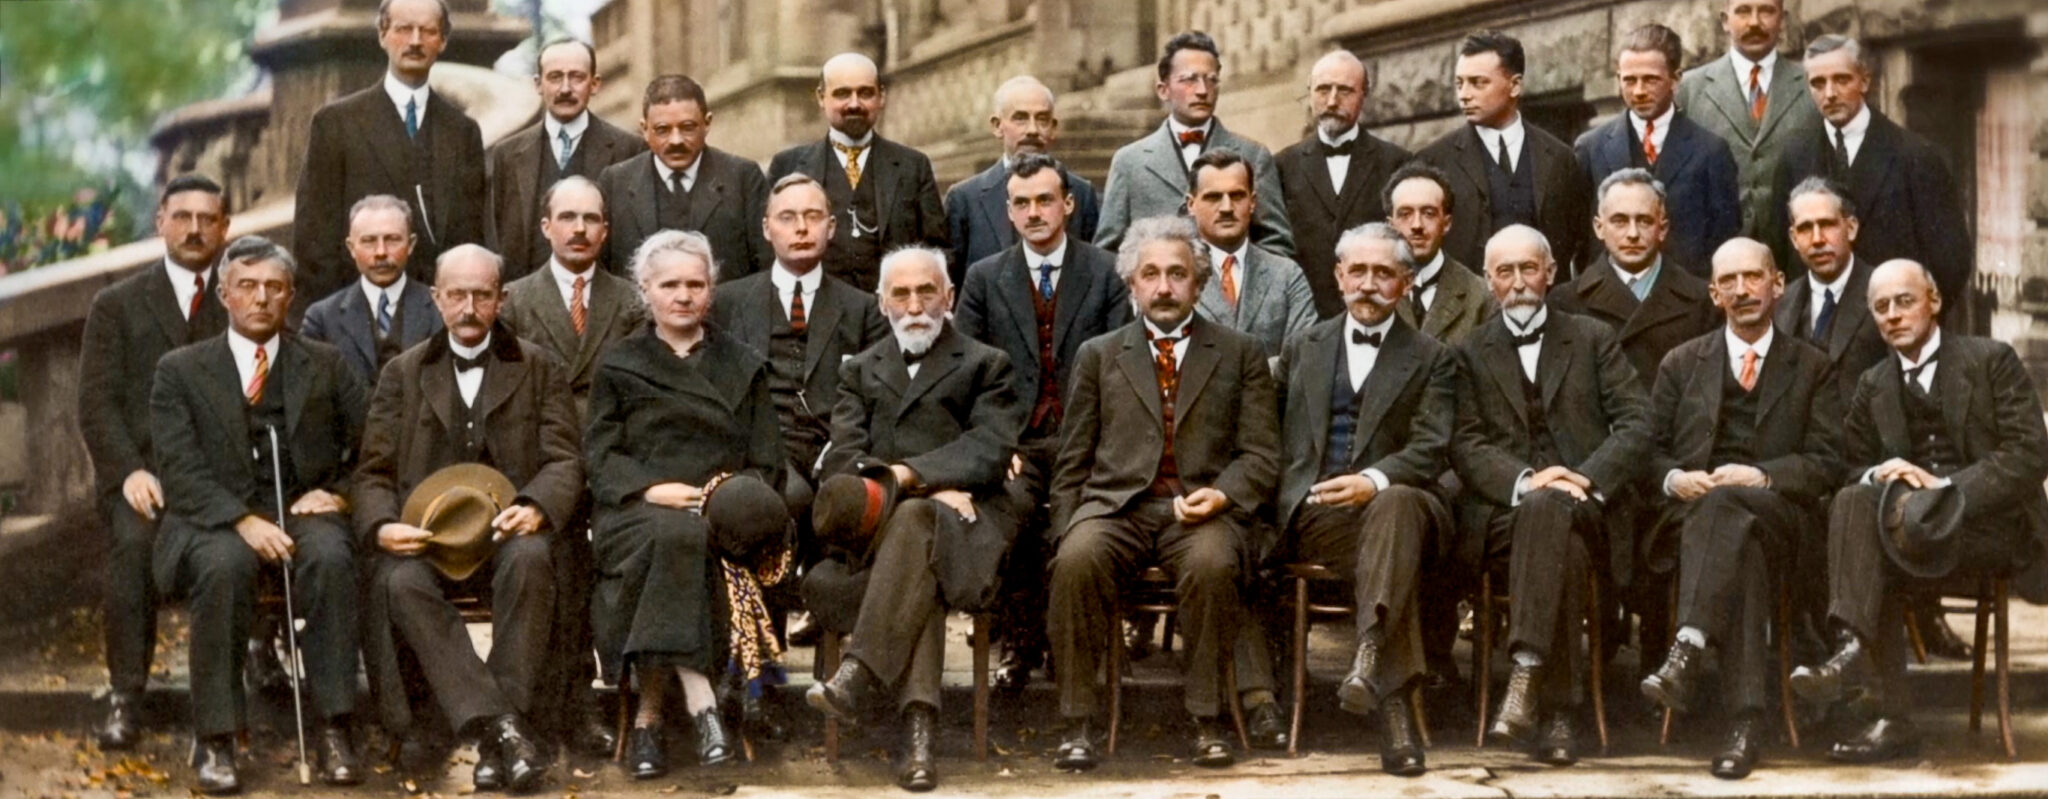 Сольвеевский конгресс 1927 года